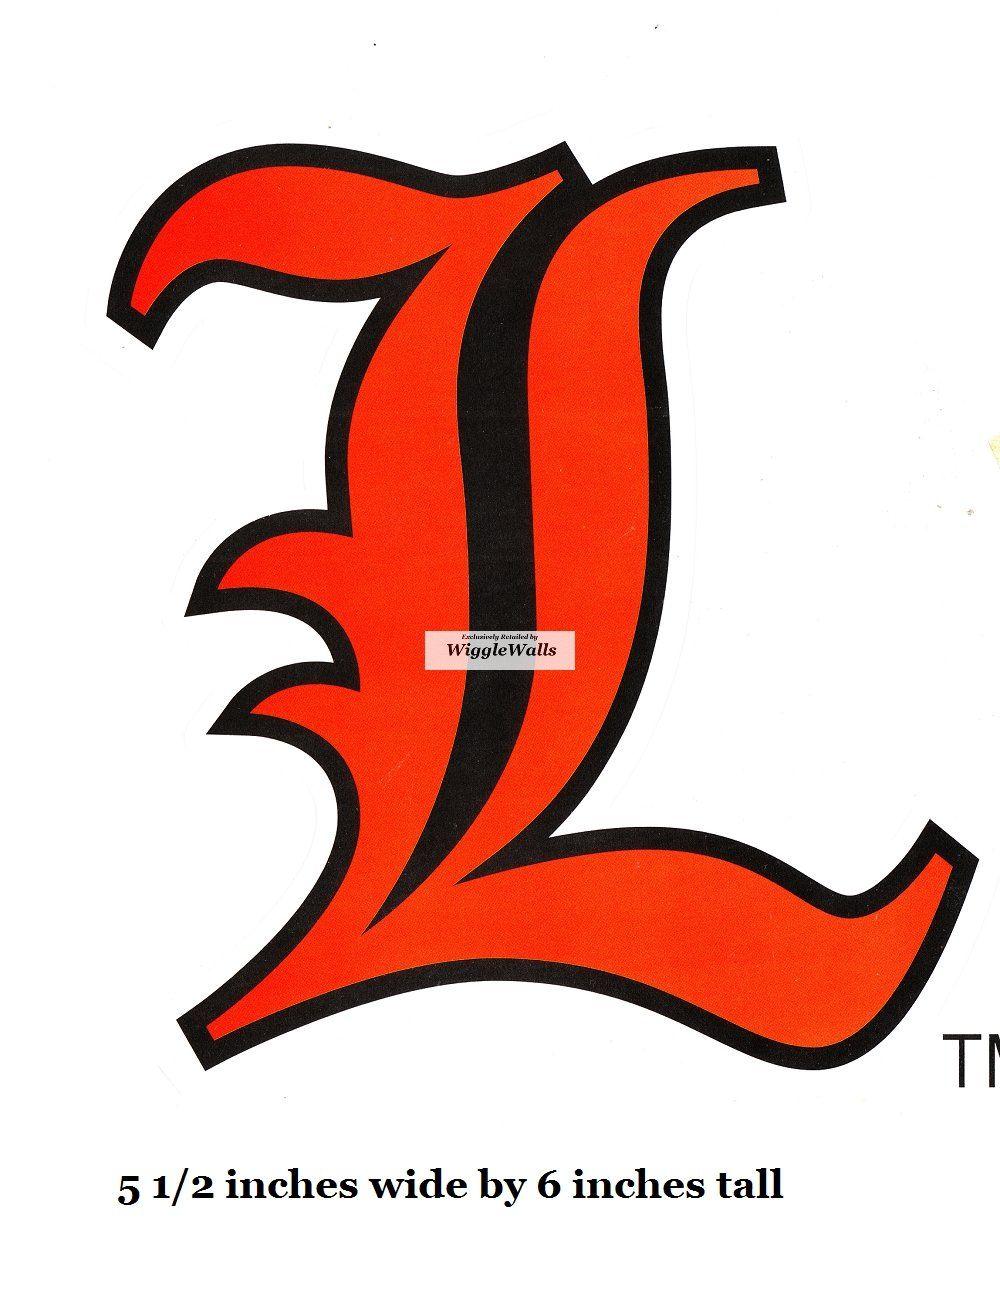 University of Louisville Cardinals Logo - Amazon.com: 6 Inch Letter L Logo University of Louisville Cardinals ...